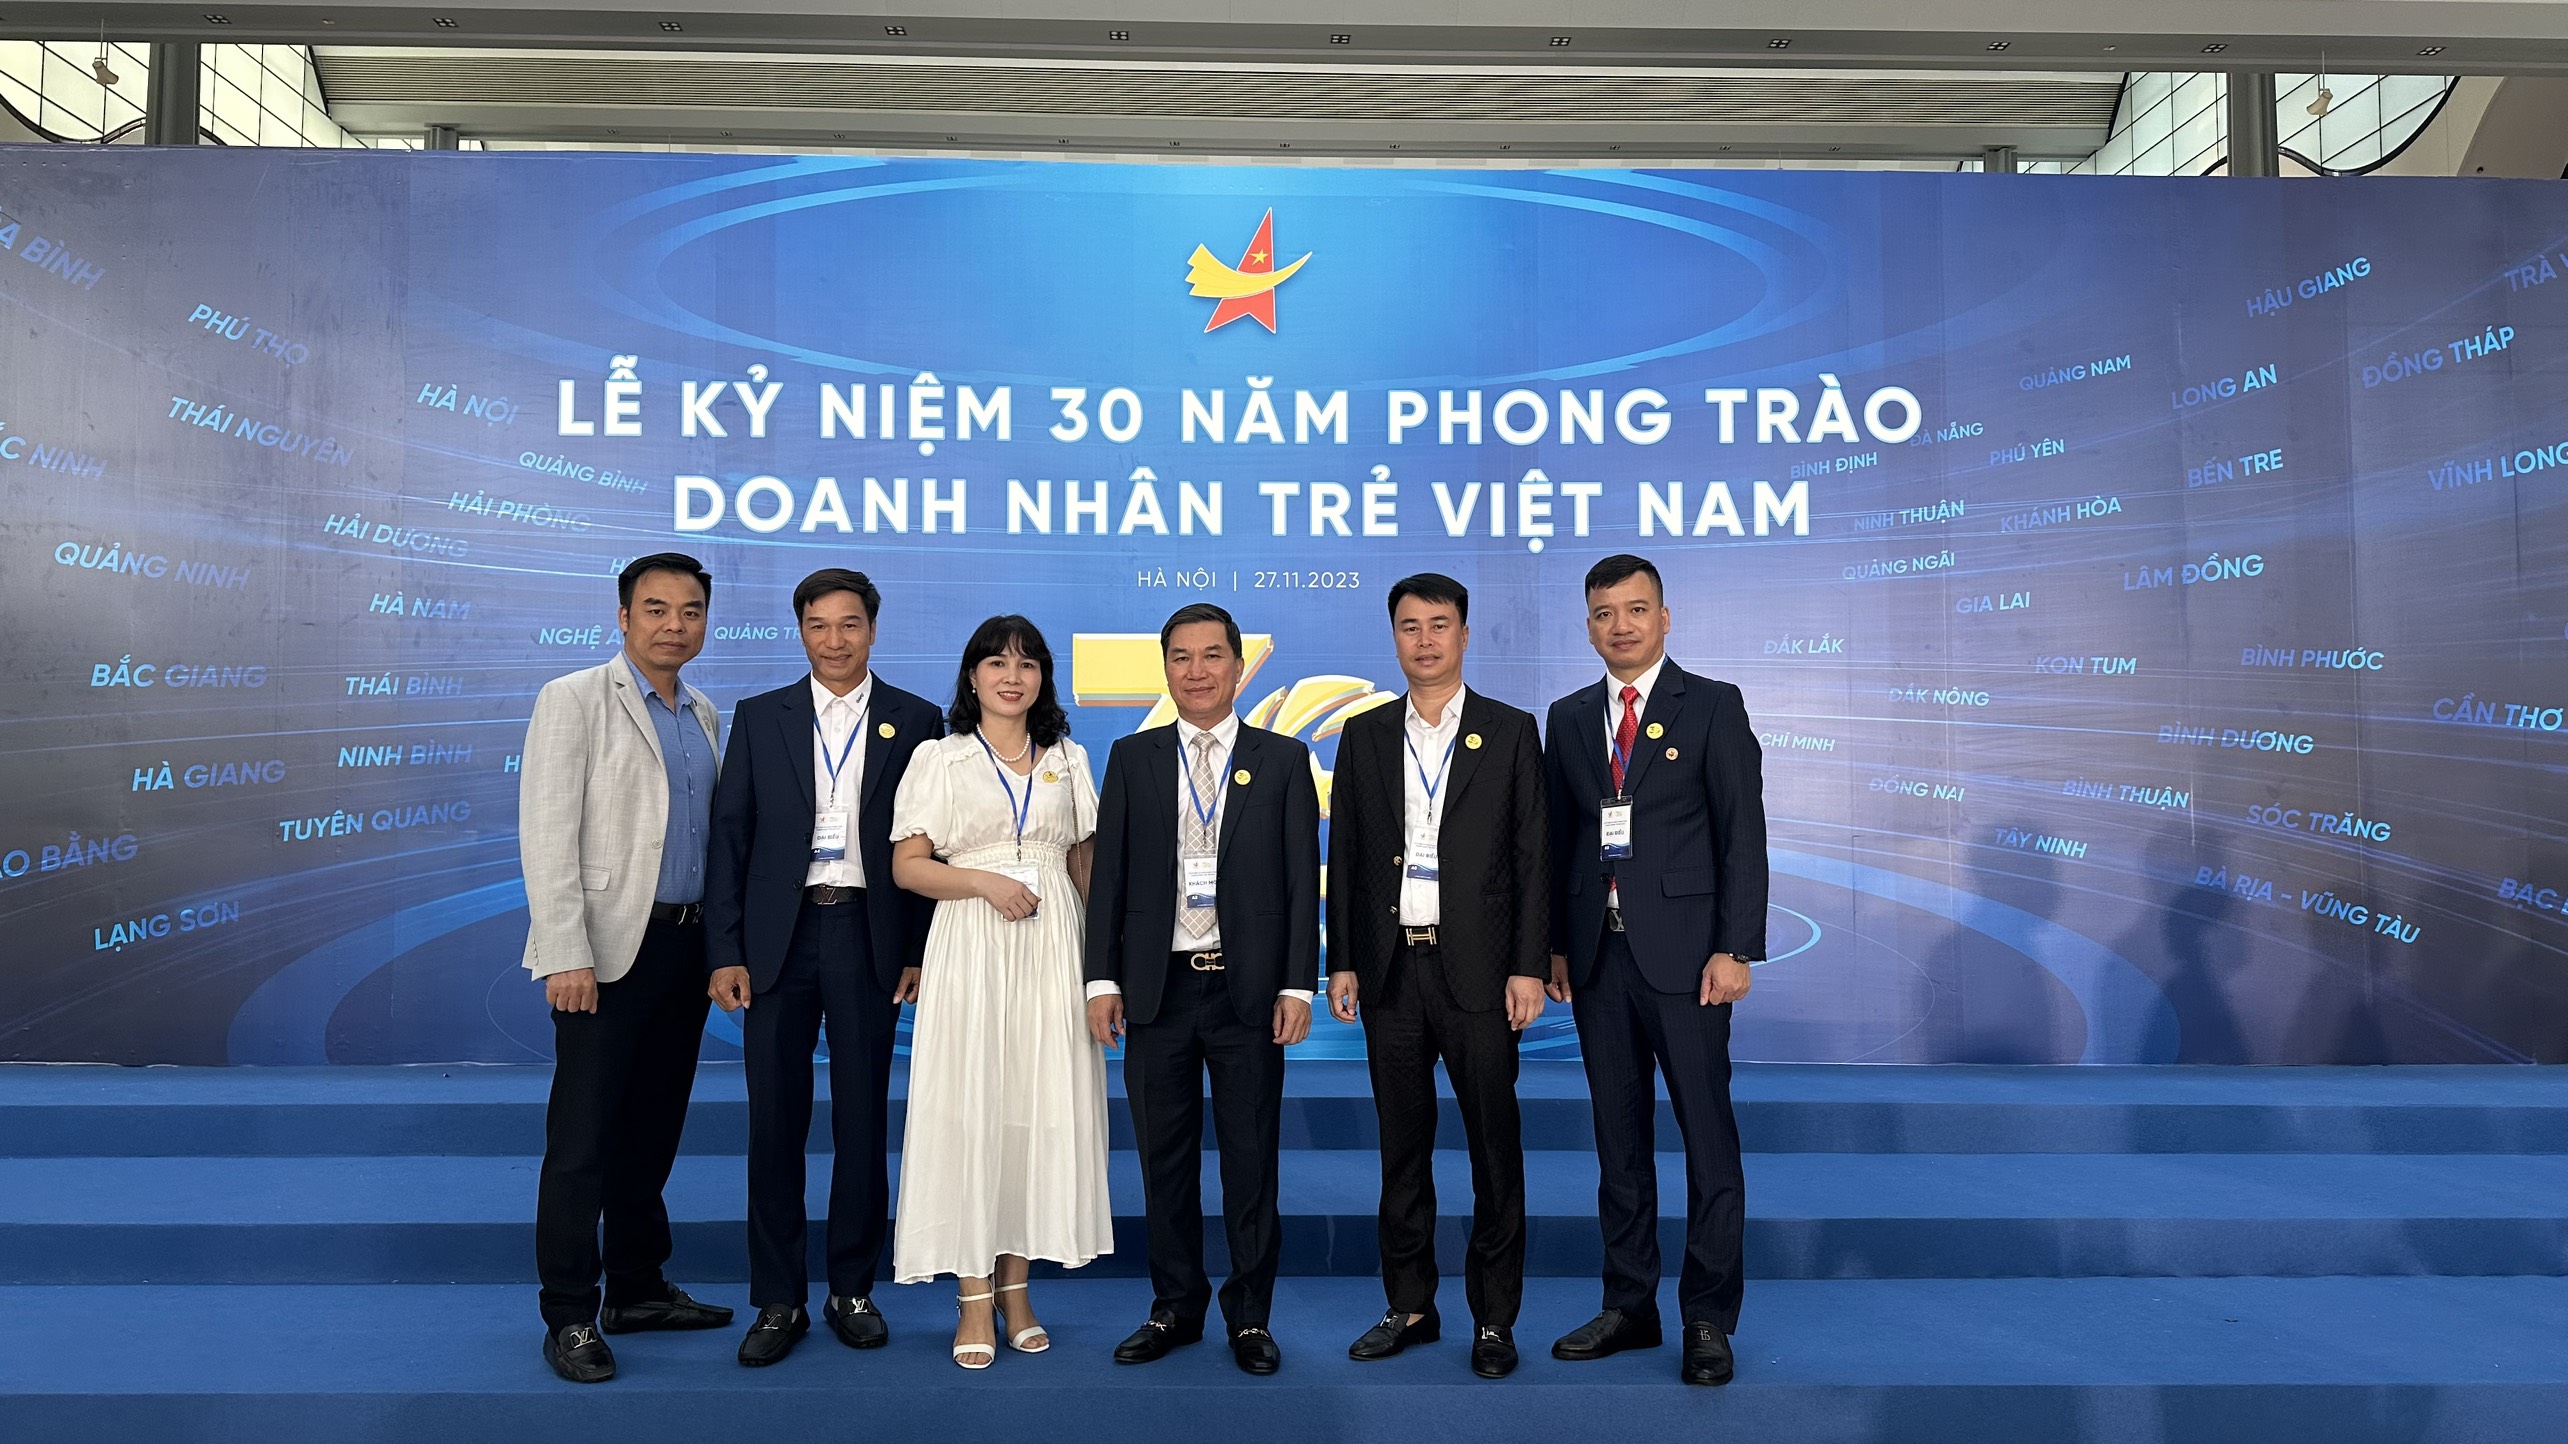 Hội Doanh nghiệp trẻ tỉnh Hải Dương tham dự Lễ Kỷ niêm 30 năm phong trào Doanh nhân trẻ Việt Nam